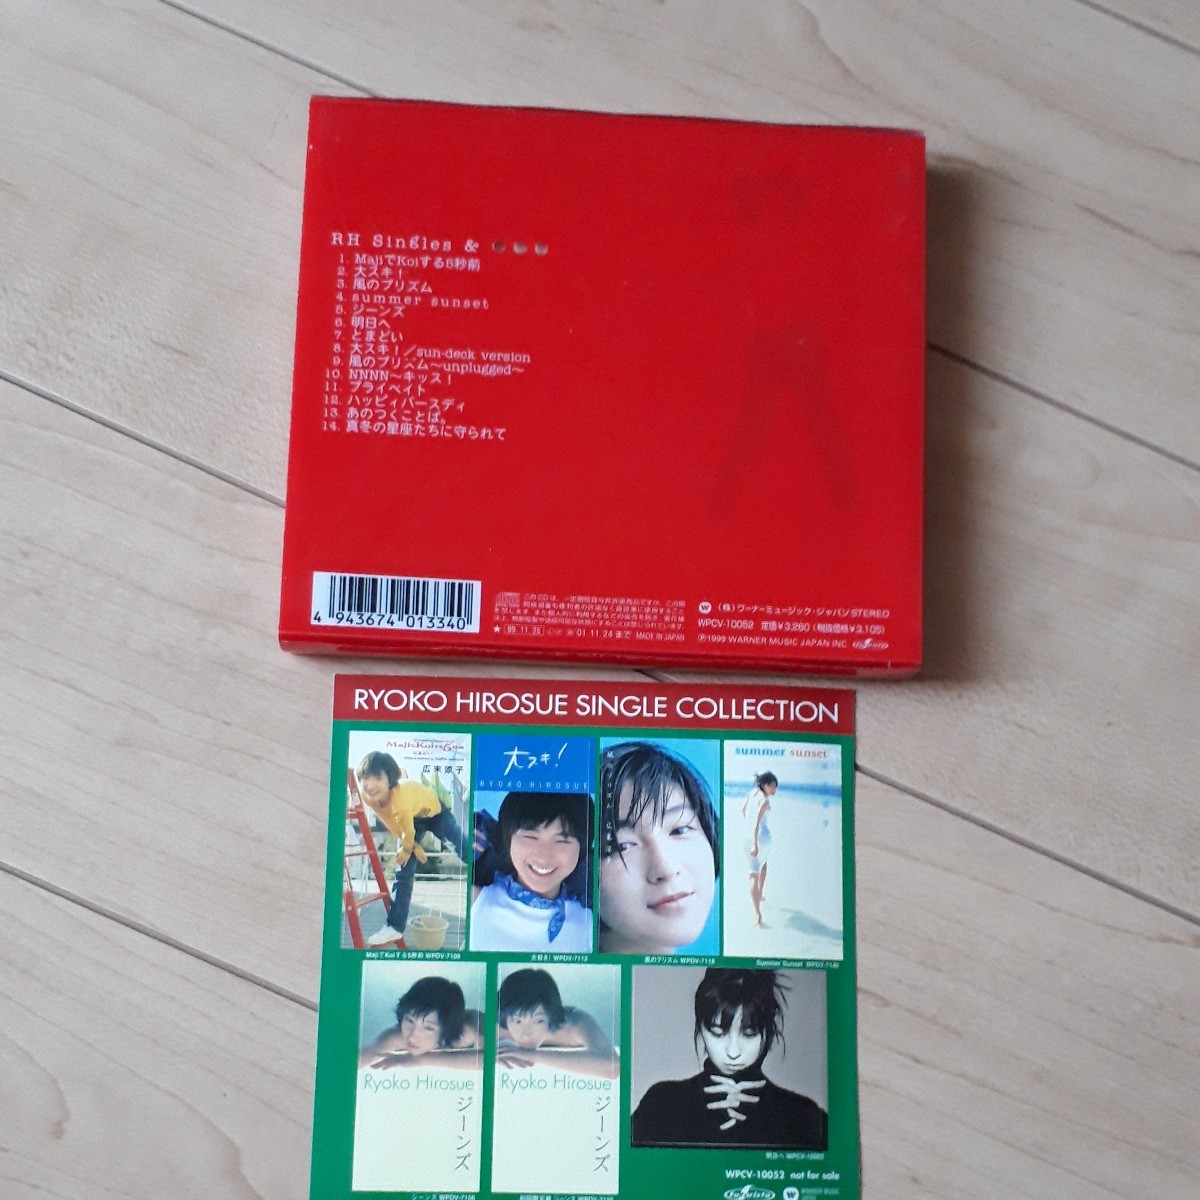  Hirosue Ryouko лучший альбом первый раз ограничение запись фотоальбом стикер имеется CD альбом RH Singles&... Maji.Koi делать 5 секунд передний 